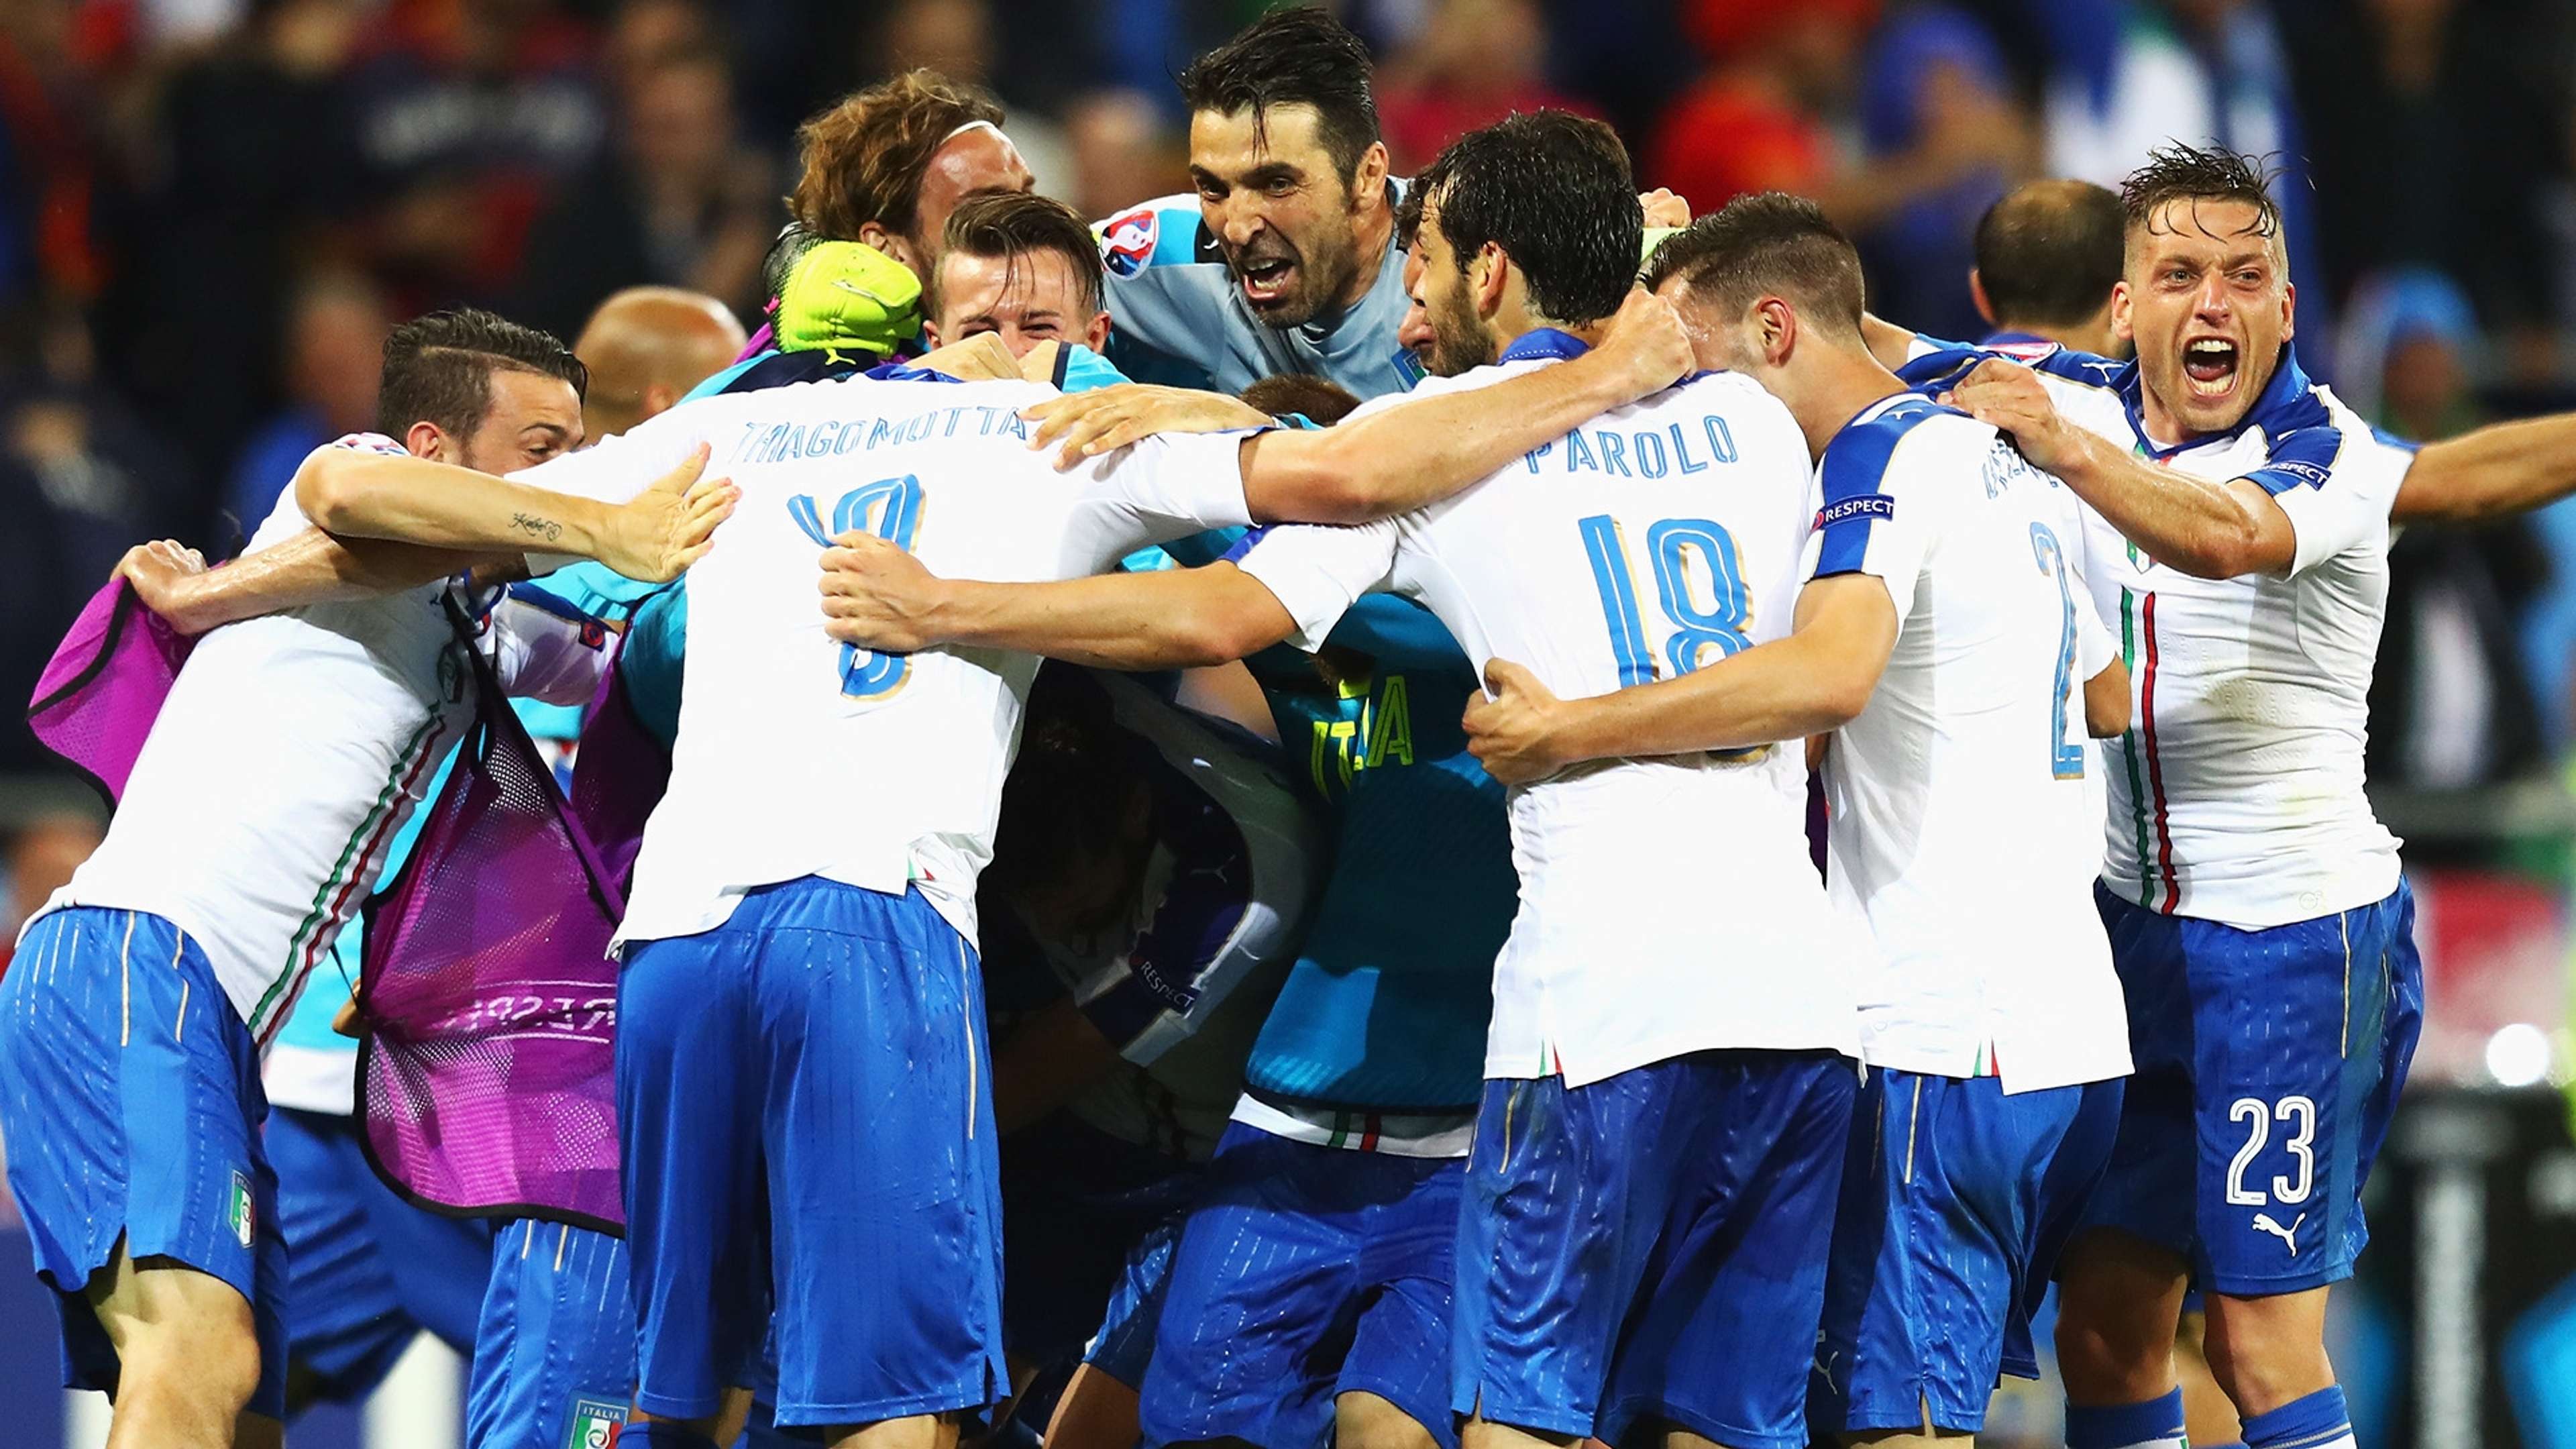 Italy celebrating vs Belgio